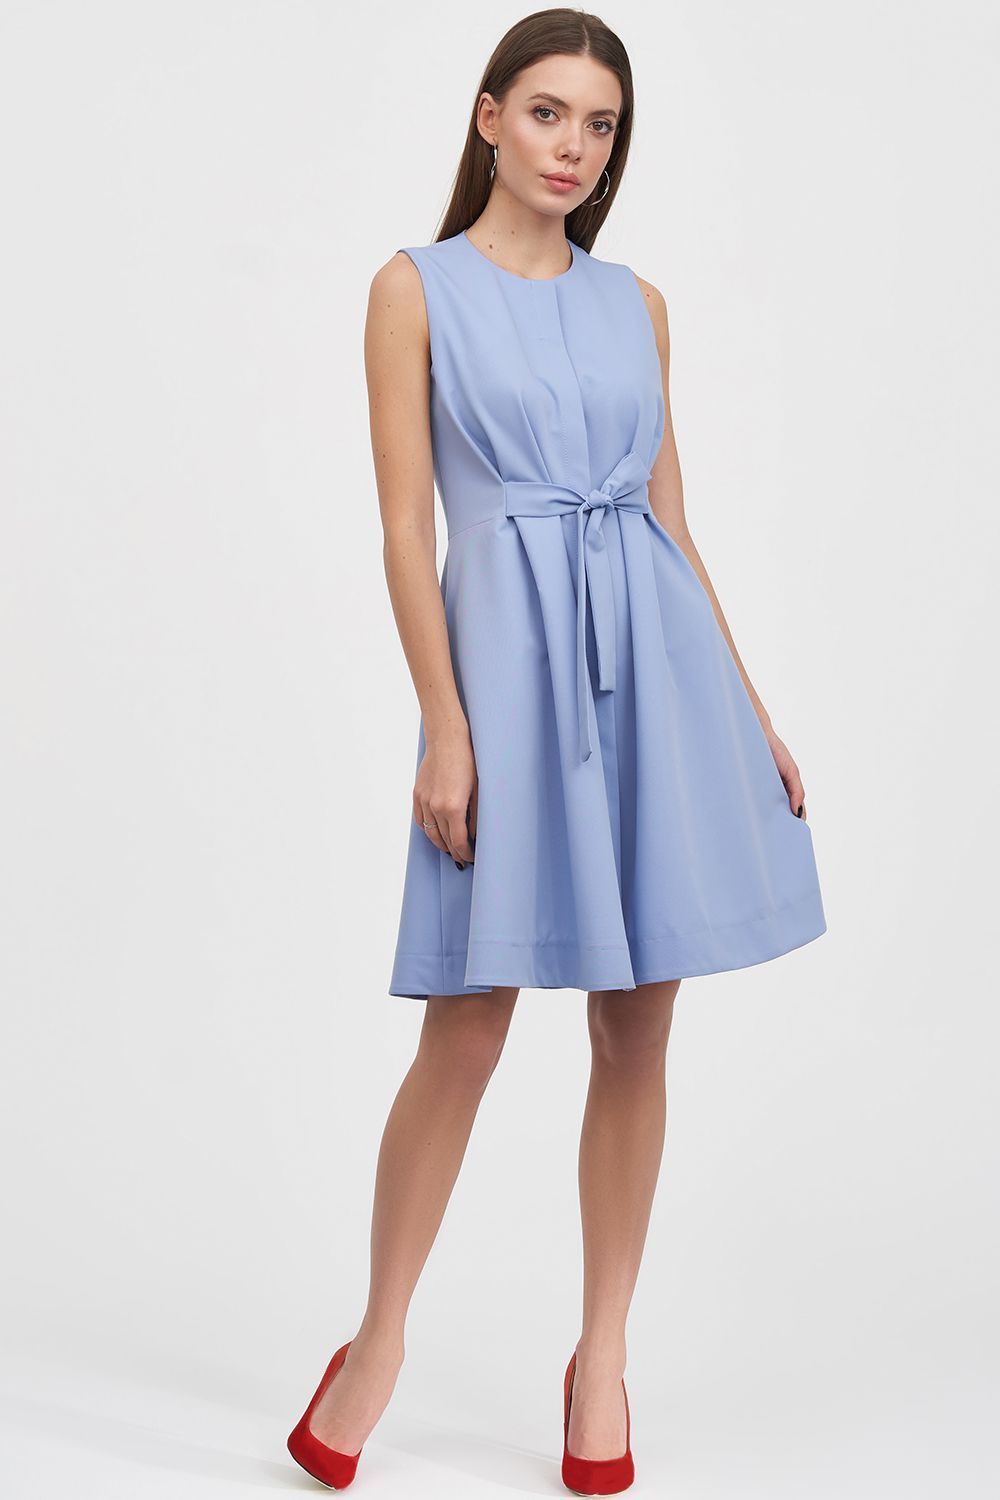 Платье голубого цвета с поясом